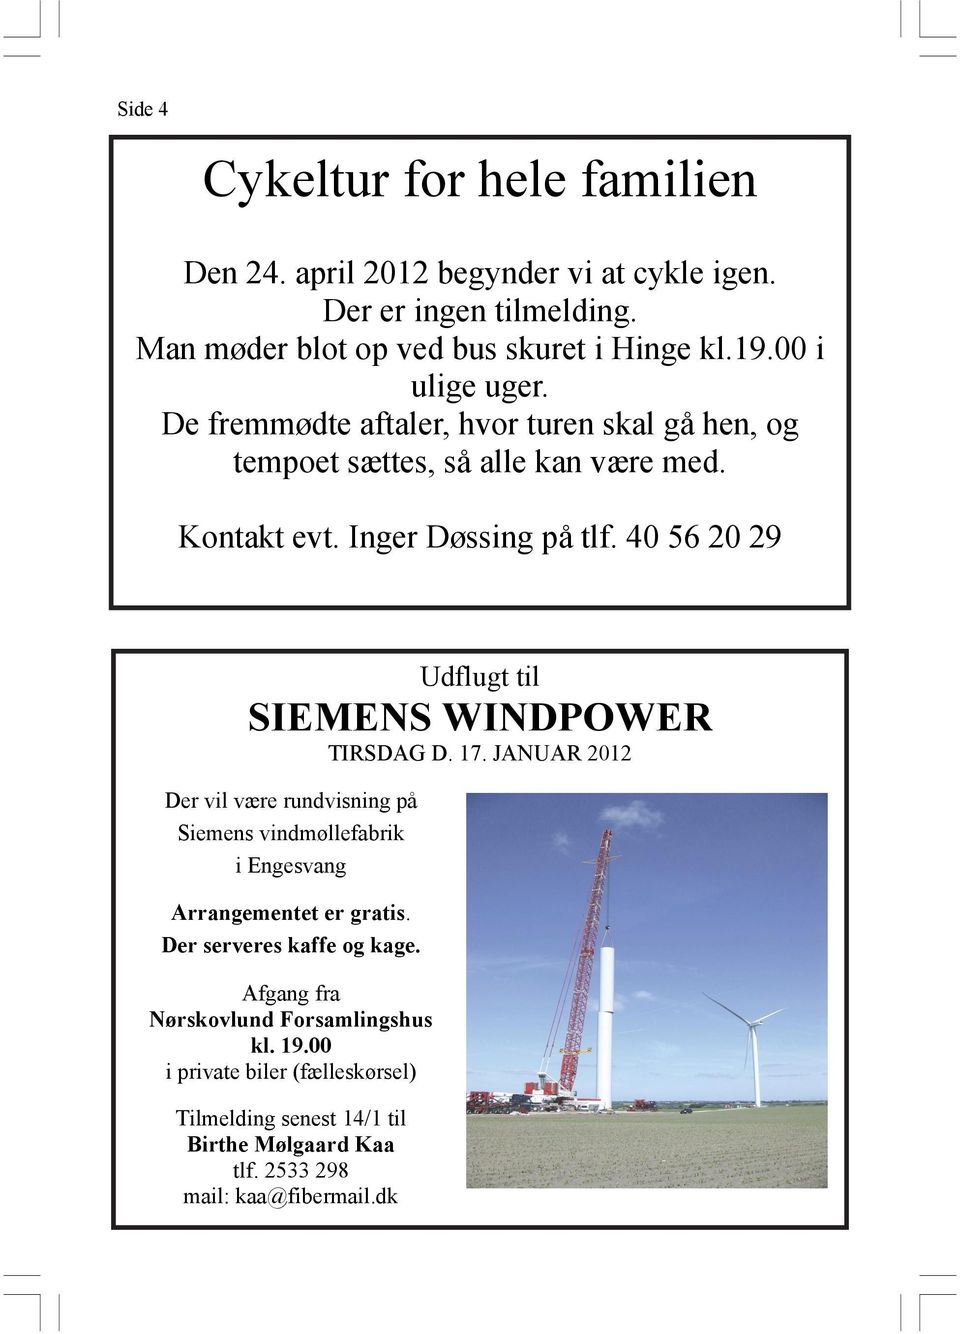 40 56 20 29 Udflugt til SIEMENS WINDPOWER TIRSDAG D. 17. JANUAR 2012 Der vil være rundvisning på Siemens vindmøllefabrik i Engesvang Arrangementet er gratis.